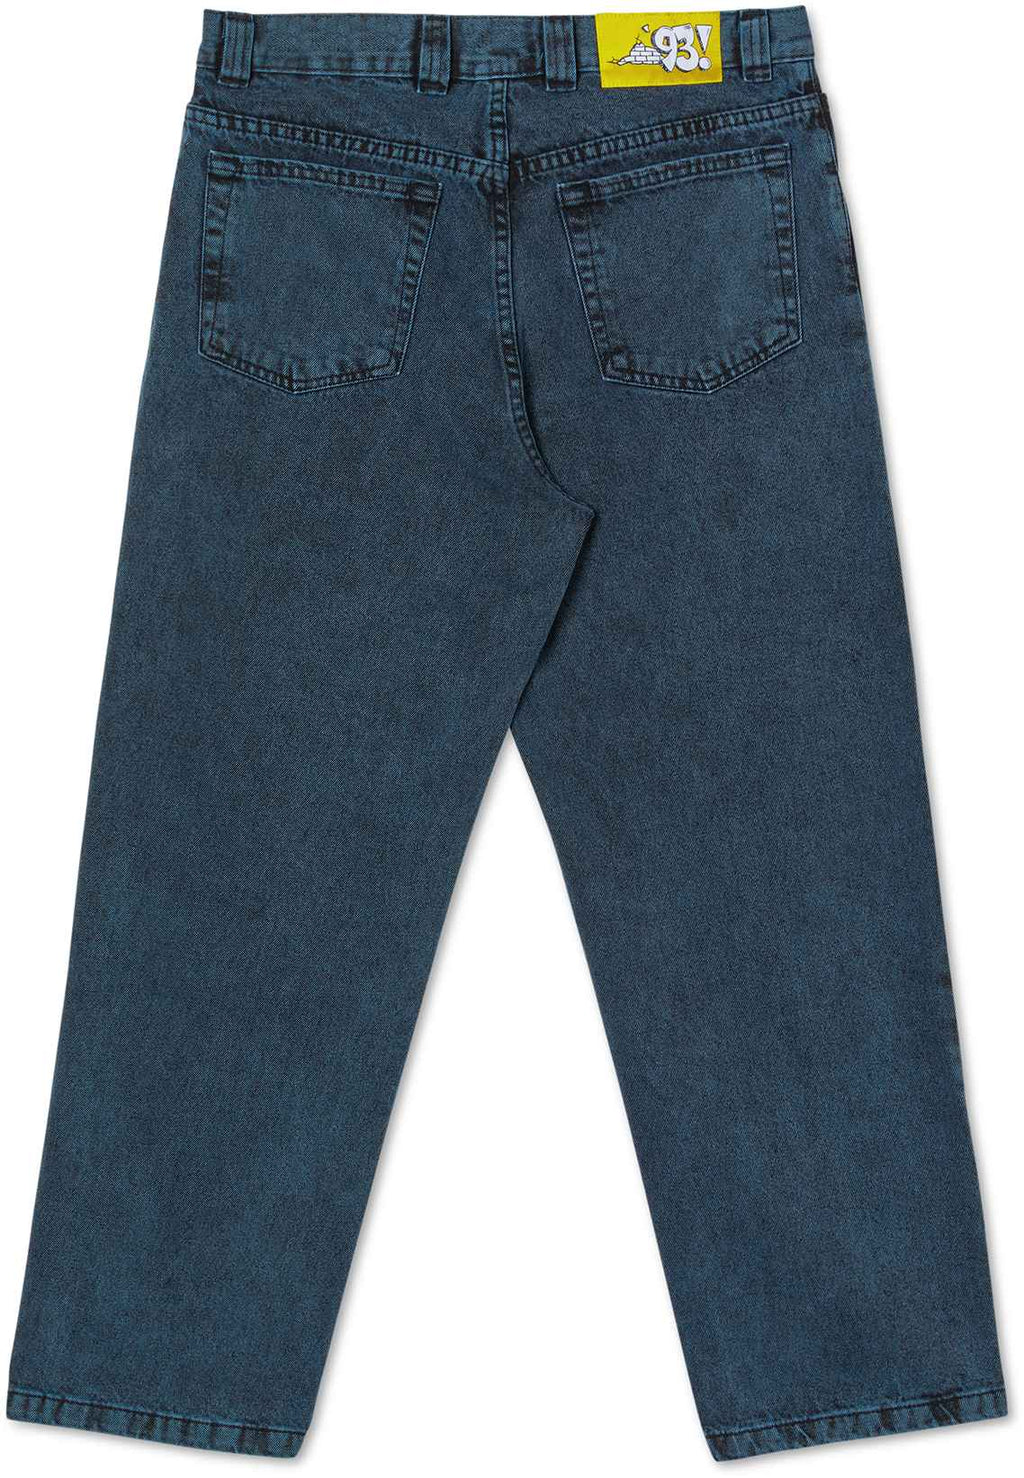 Polar Skate Co. Jeans '93 Denim Cyan Black Blue Uomo » ModeOn